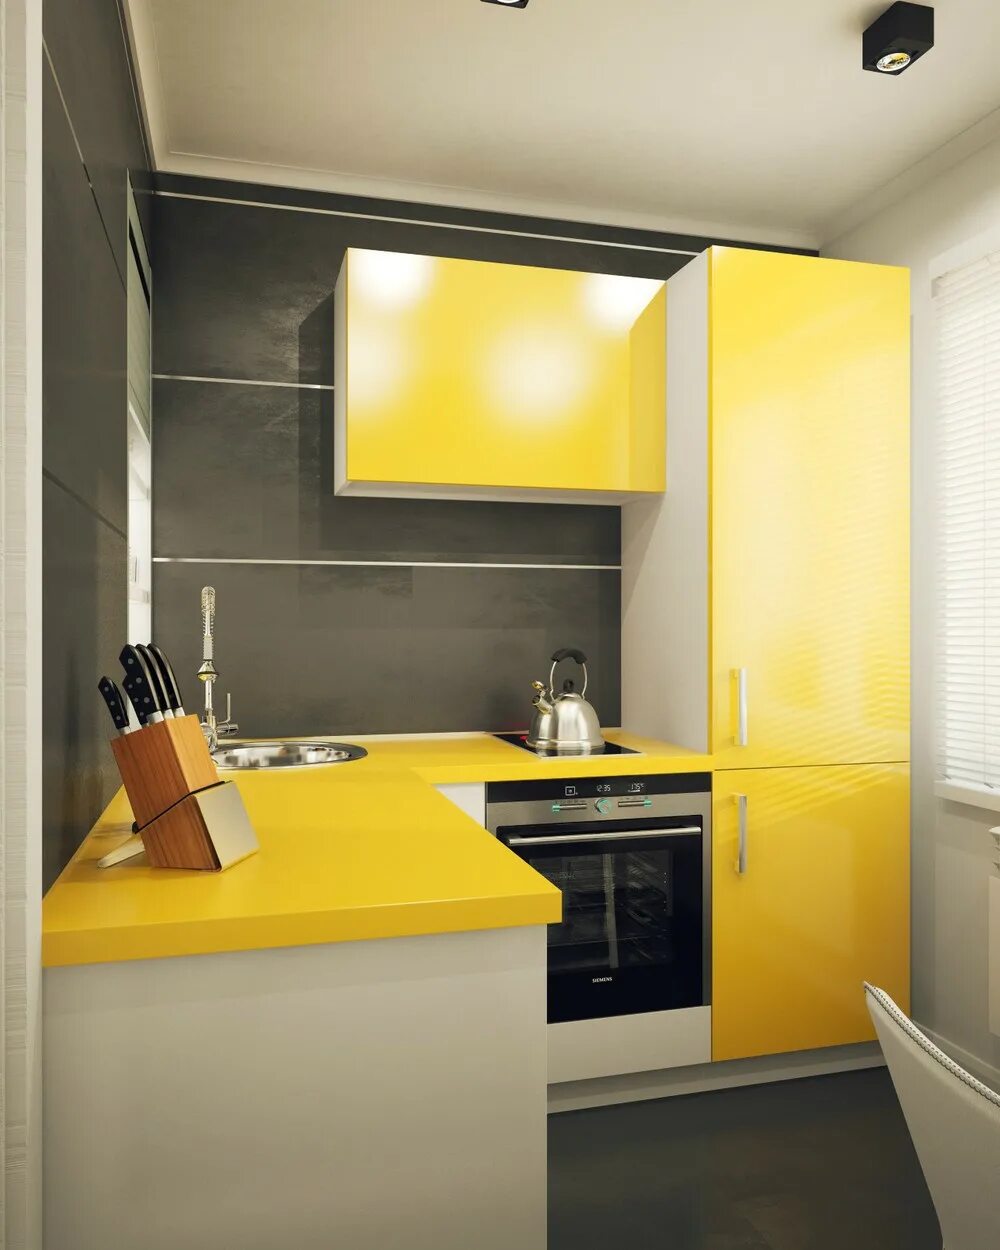 Интерьер маленькой кухни. Желтый кухонный гарнитур. Планировка маленькой кухни. Кухня в желтом стиле. Ремонт кухни 5 метров